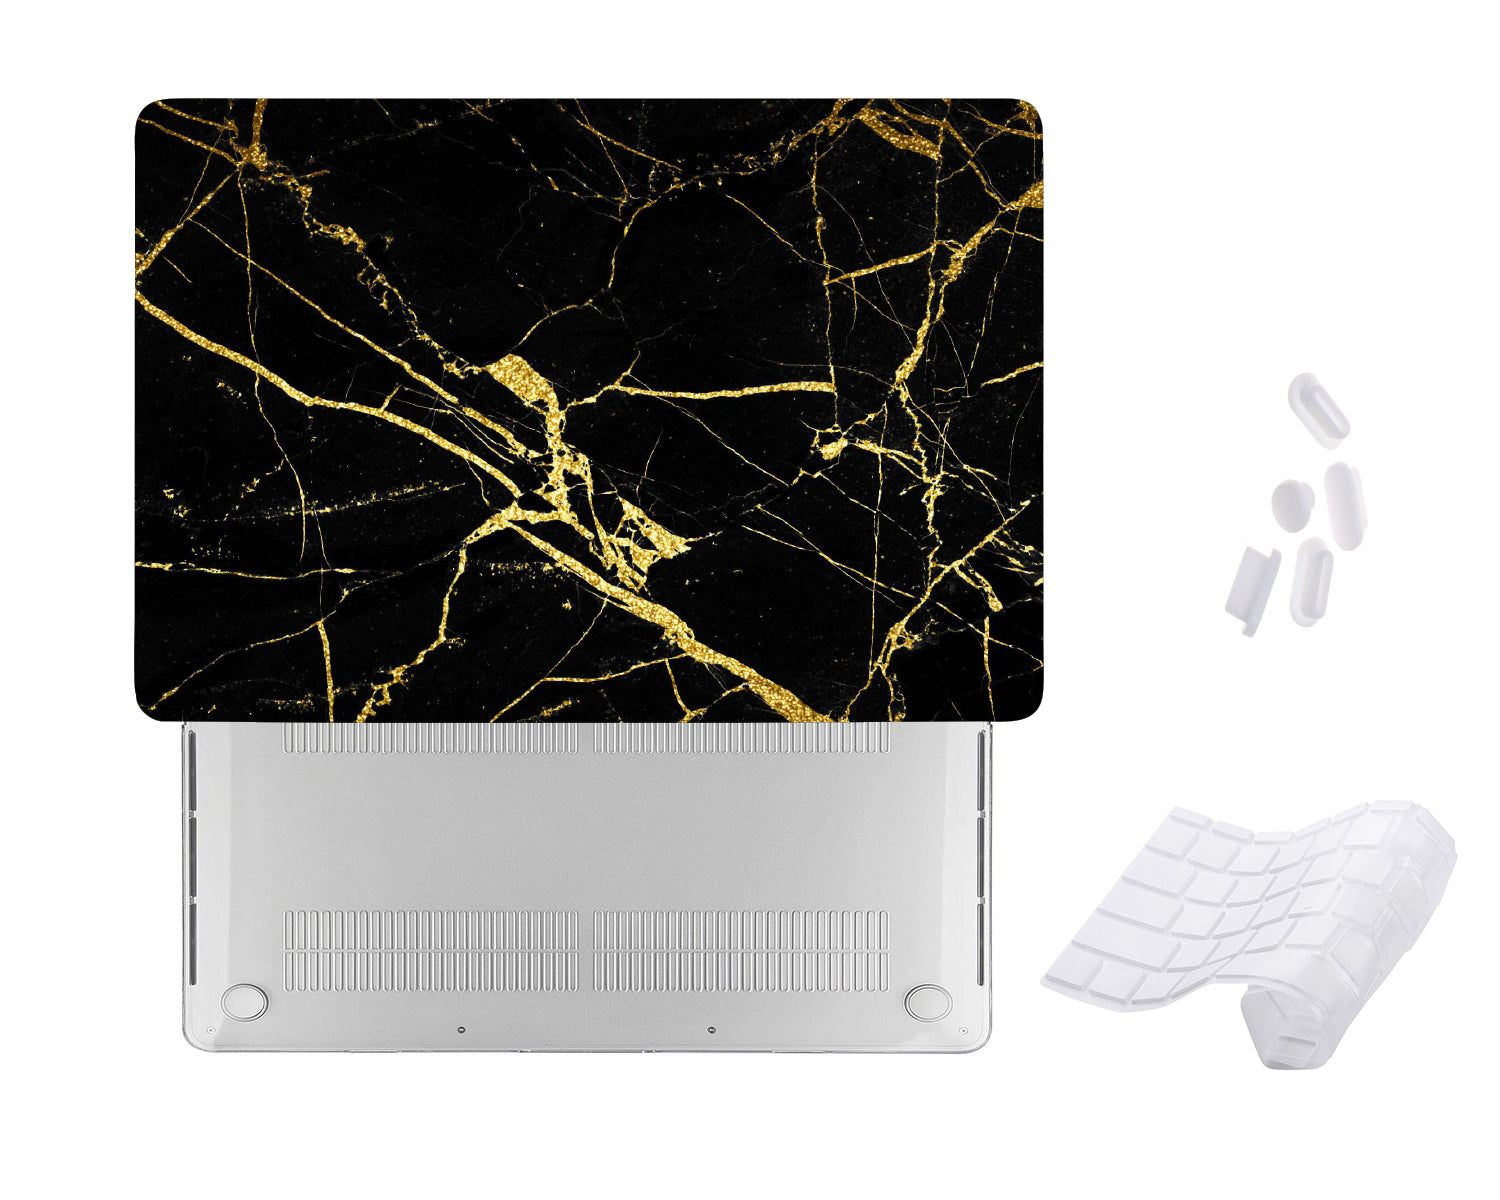 Case Cover for Macbook - Black Golden Marble Design